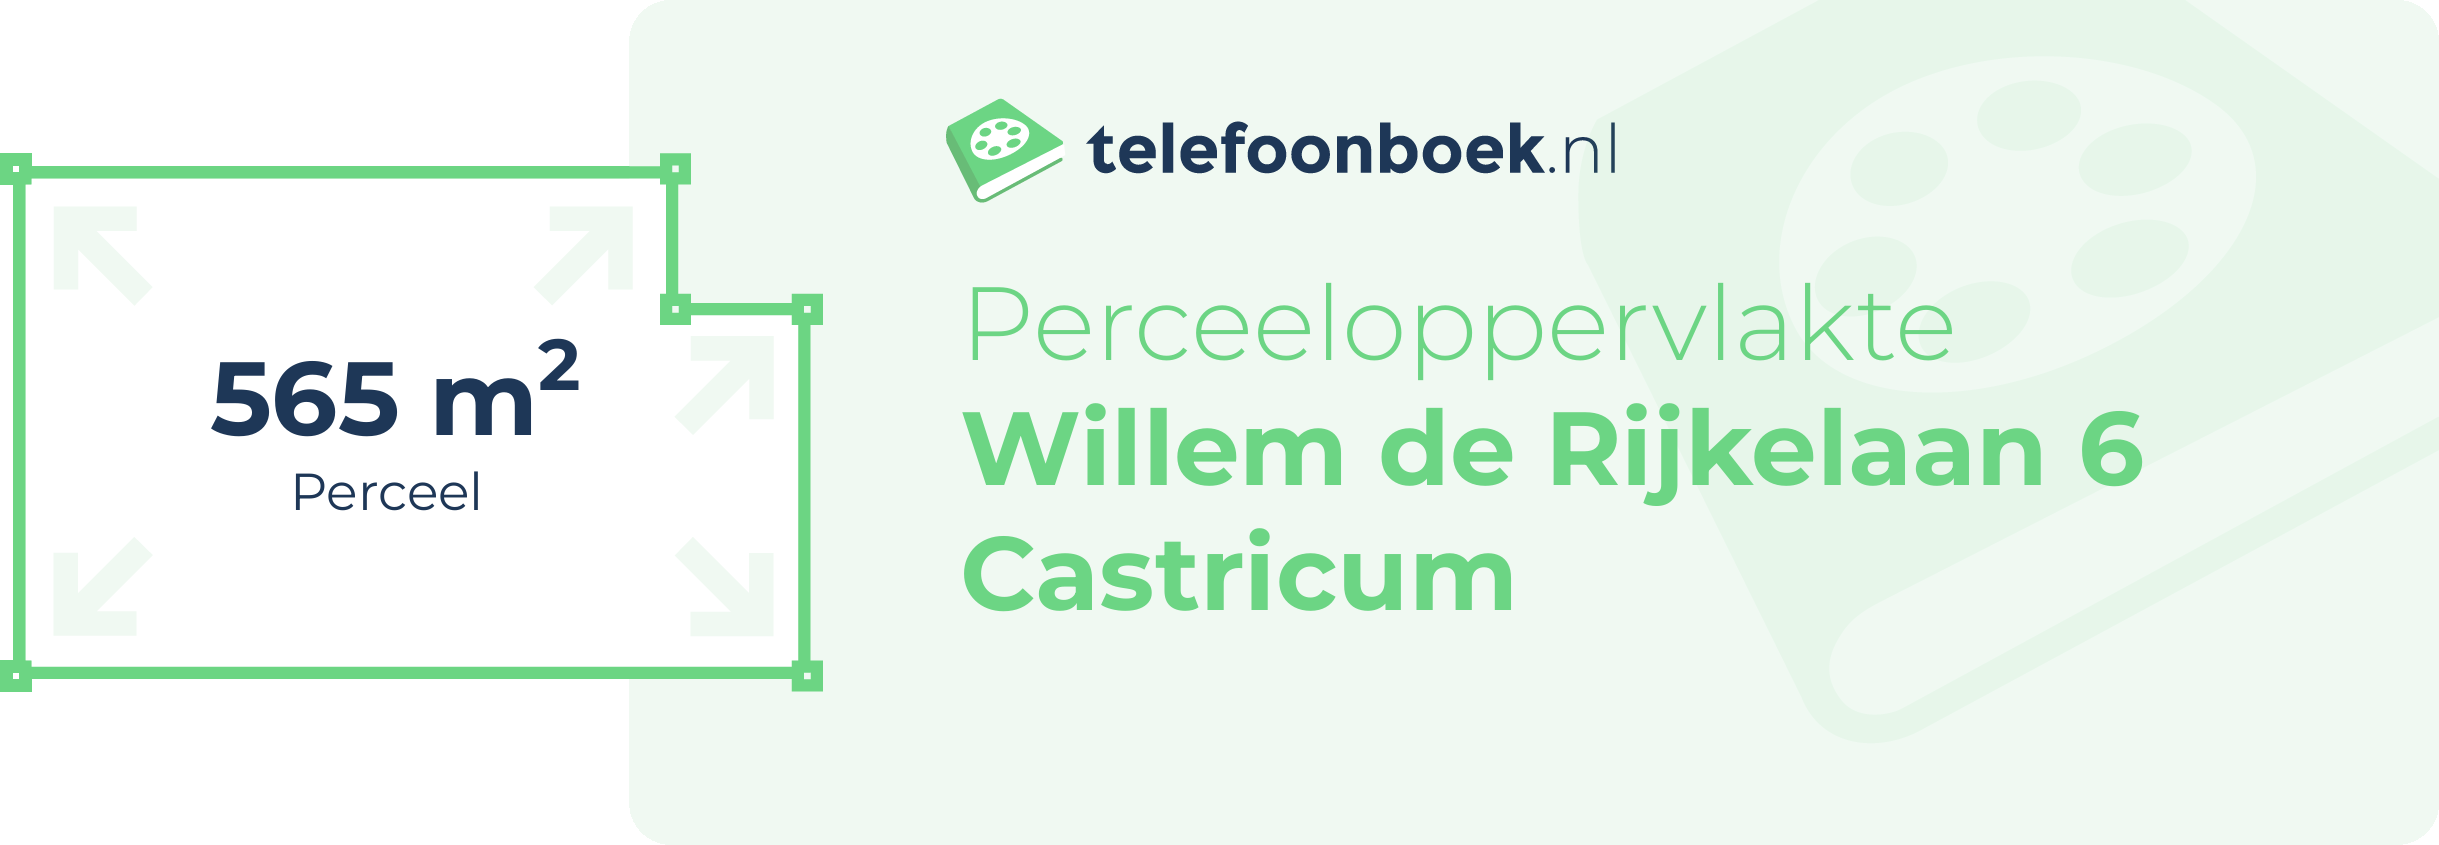 Perceeloppervlakte Willem De Rijkelaan 6 Castricum